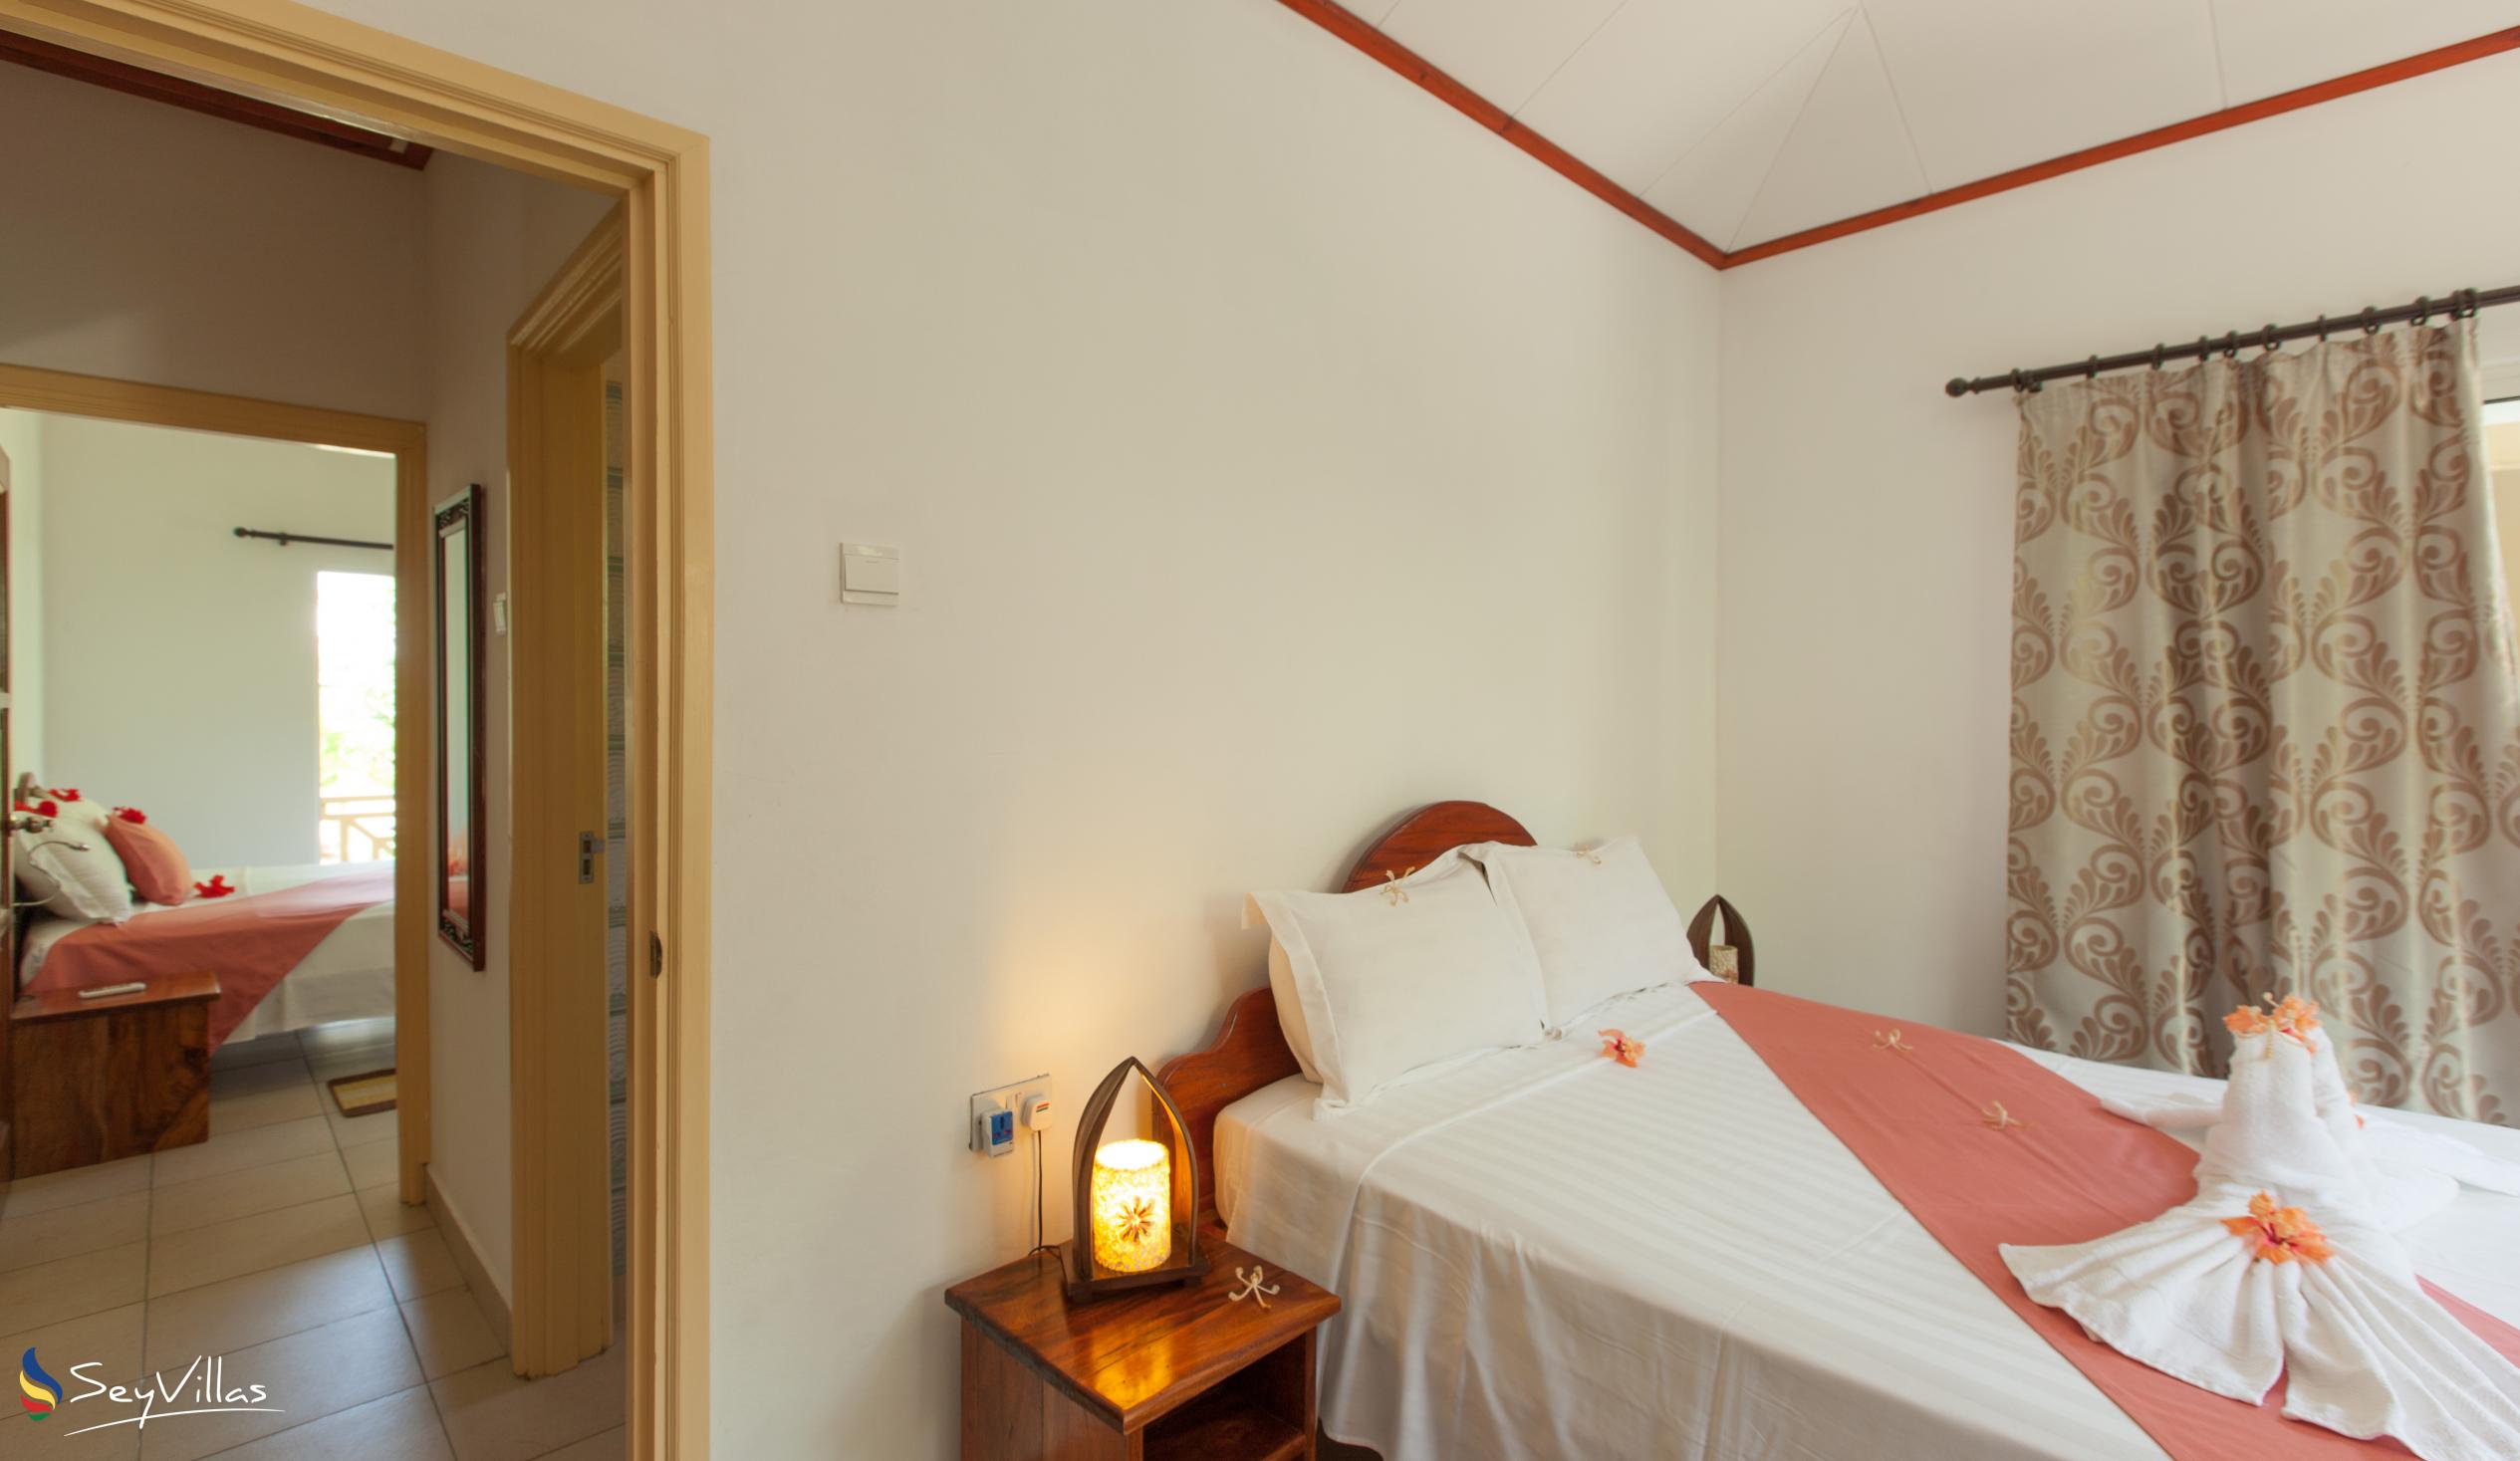 Foto 23: Hostellerie La Digue - Chalet mit 3 Schlafzimmern - La Digue (Seychellen)